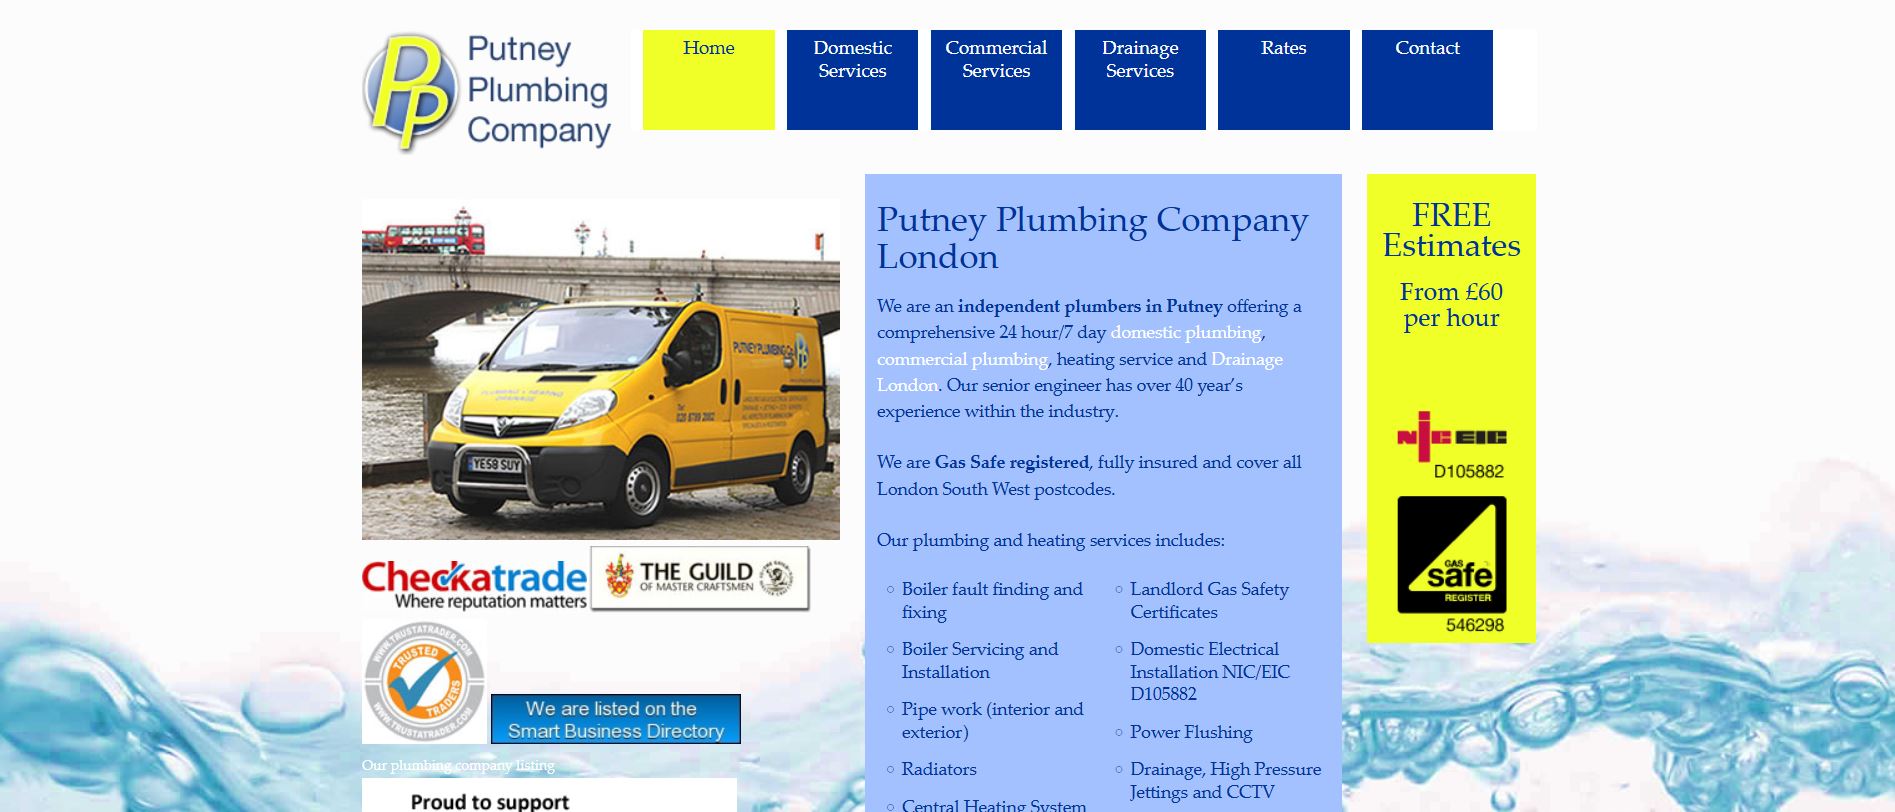 Putney Plumbing Company